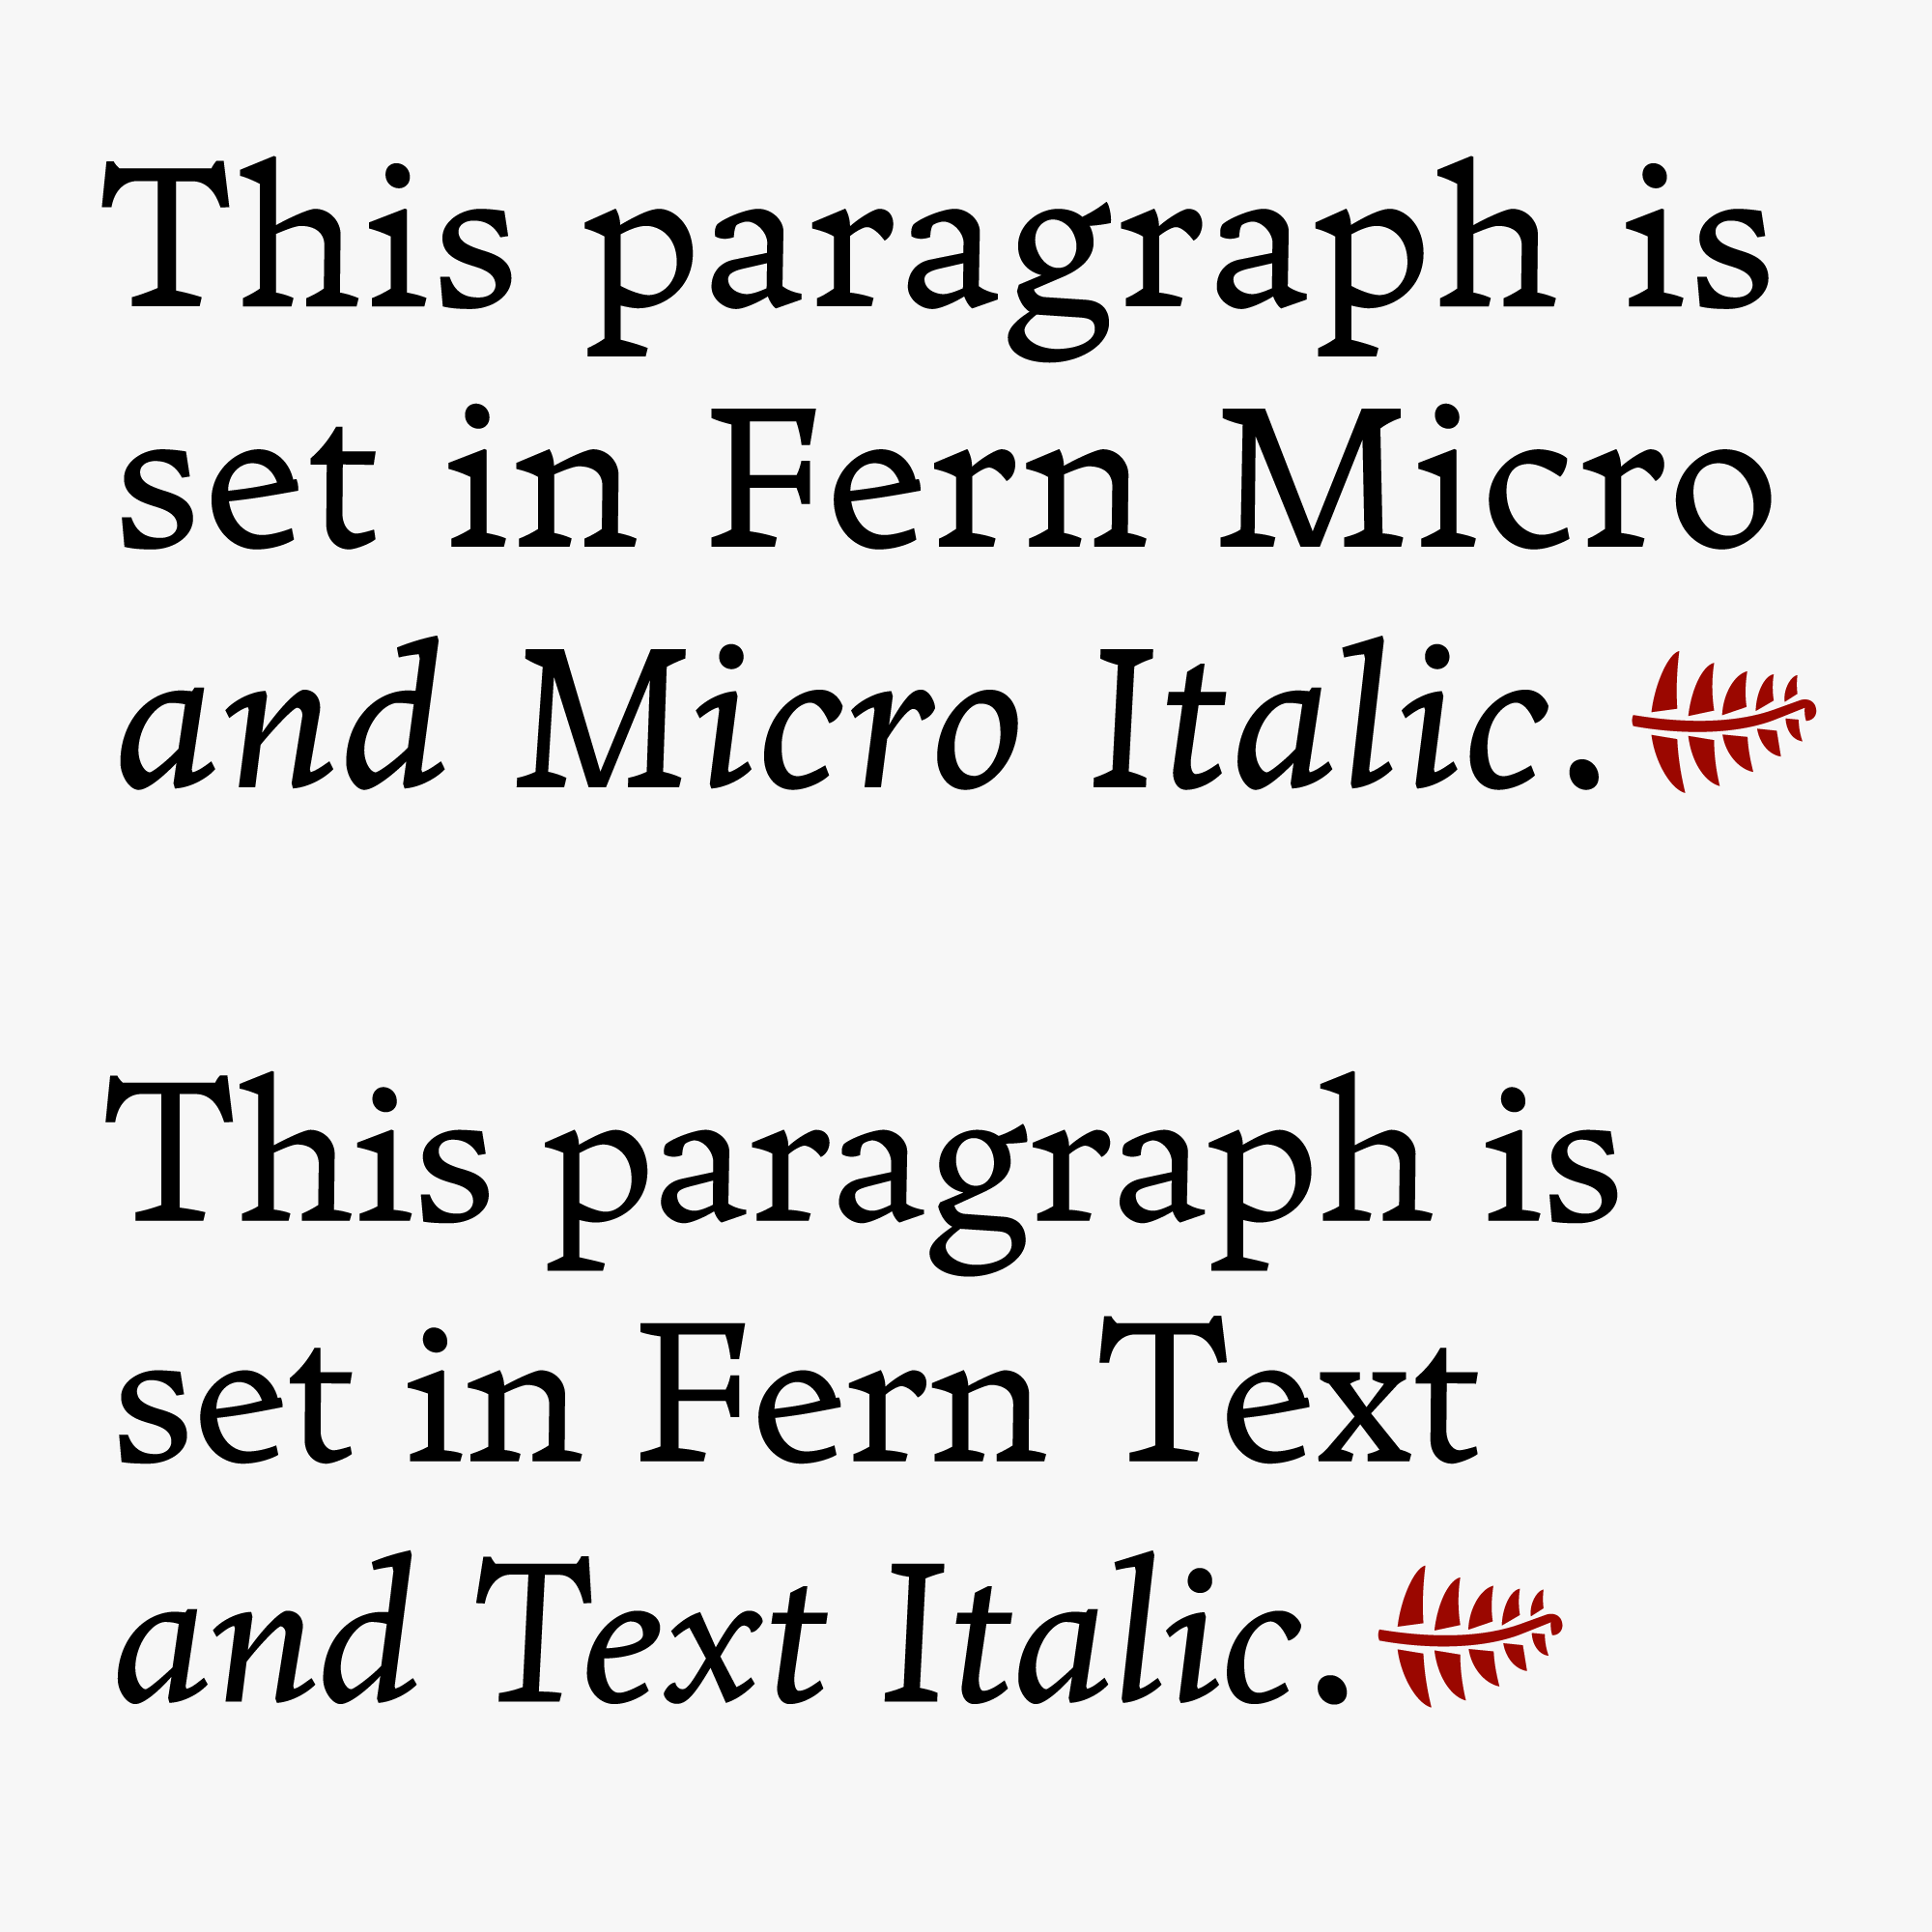 Fern text vs fern micro